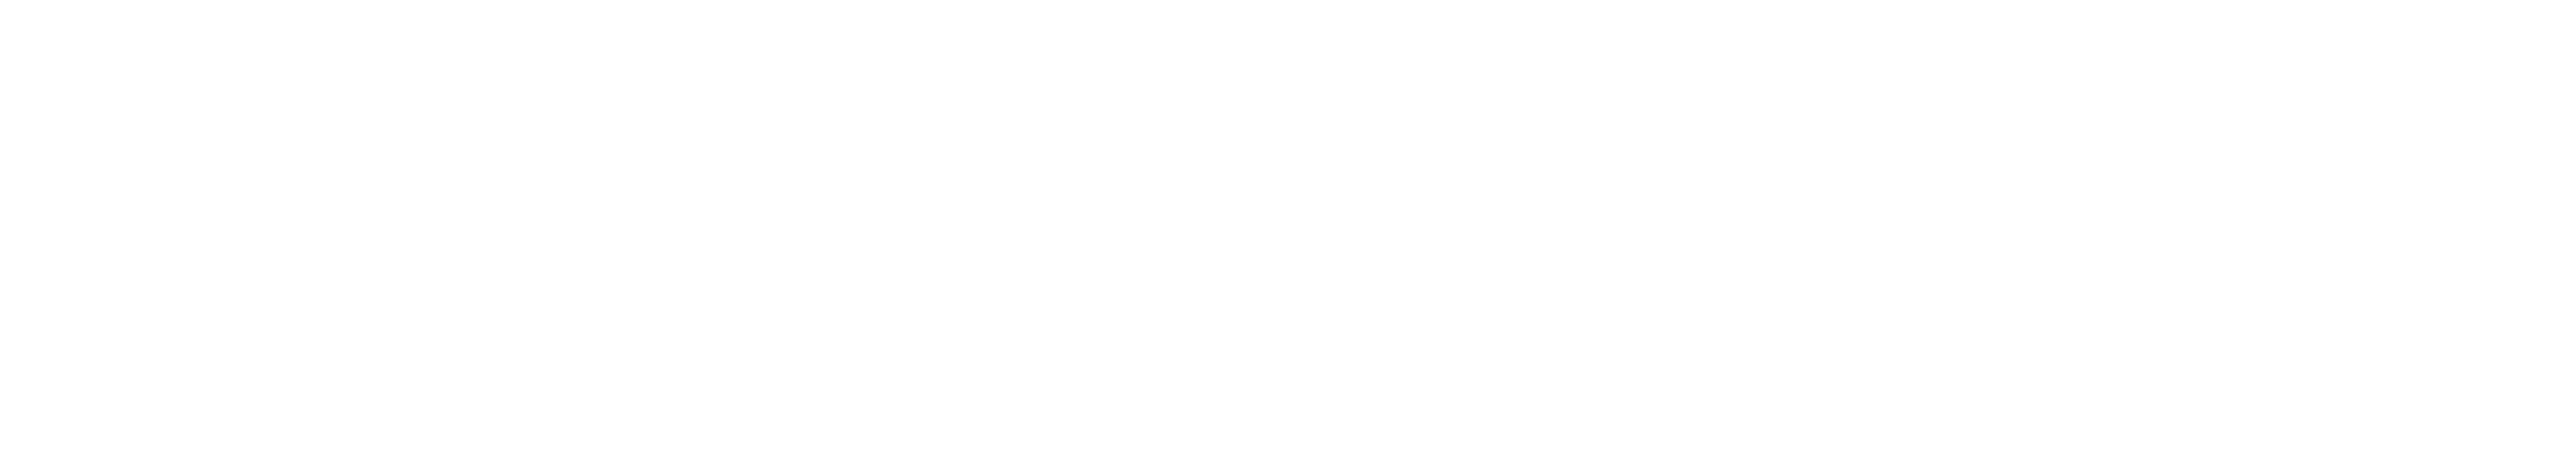 Stop-Zemlia logo